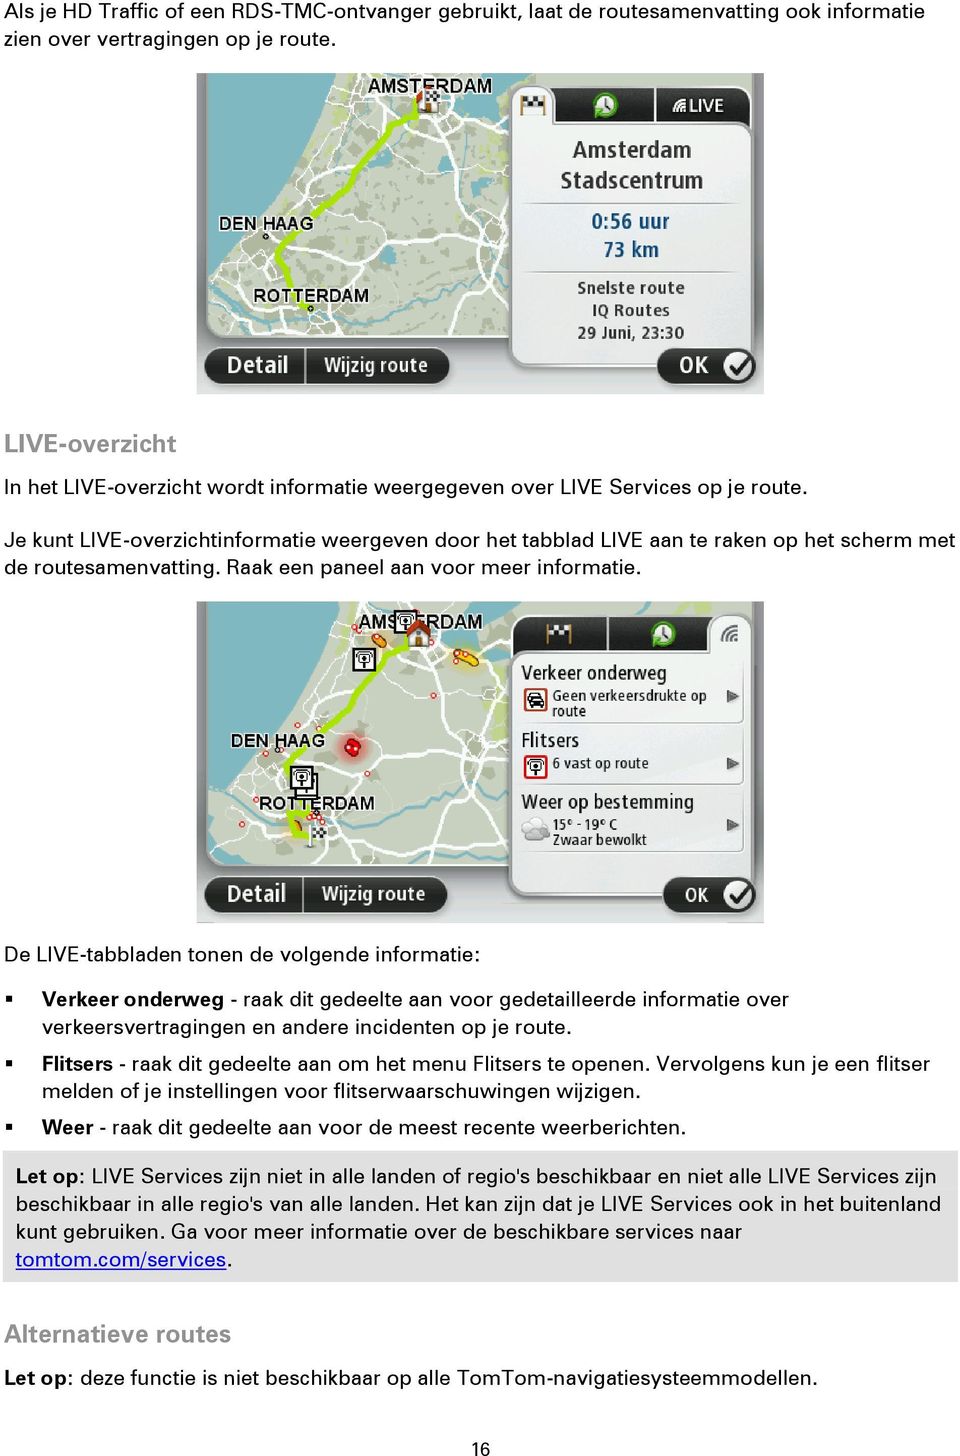 Je kunt LIVE-overzichtinformatie weergeven door het tabblad LIVE aan te raken op het scherm met de routesamenvatting. Raak een paneel aan voor meer informatie.